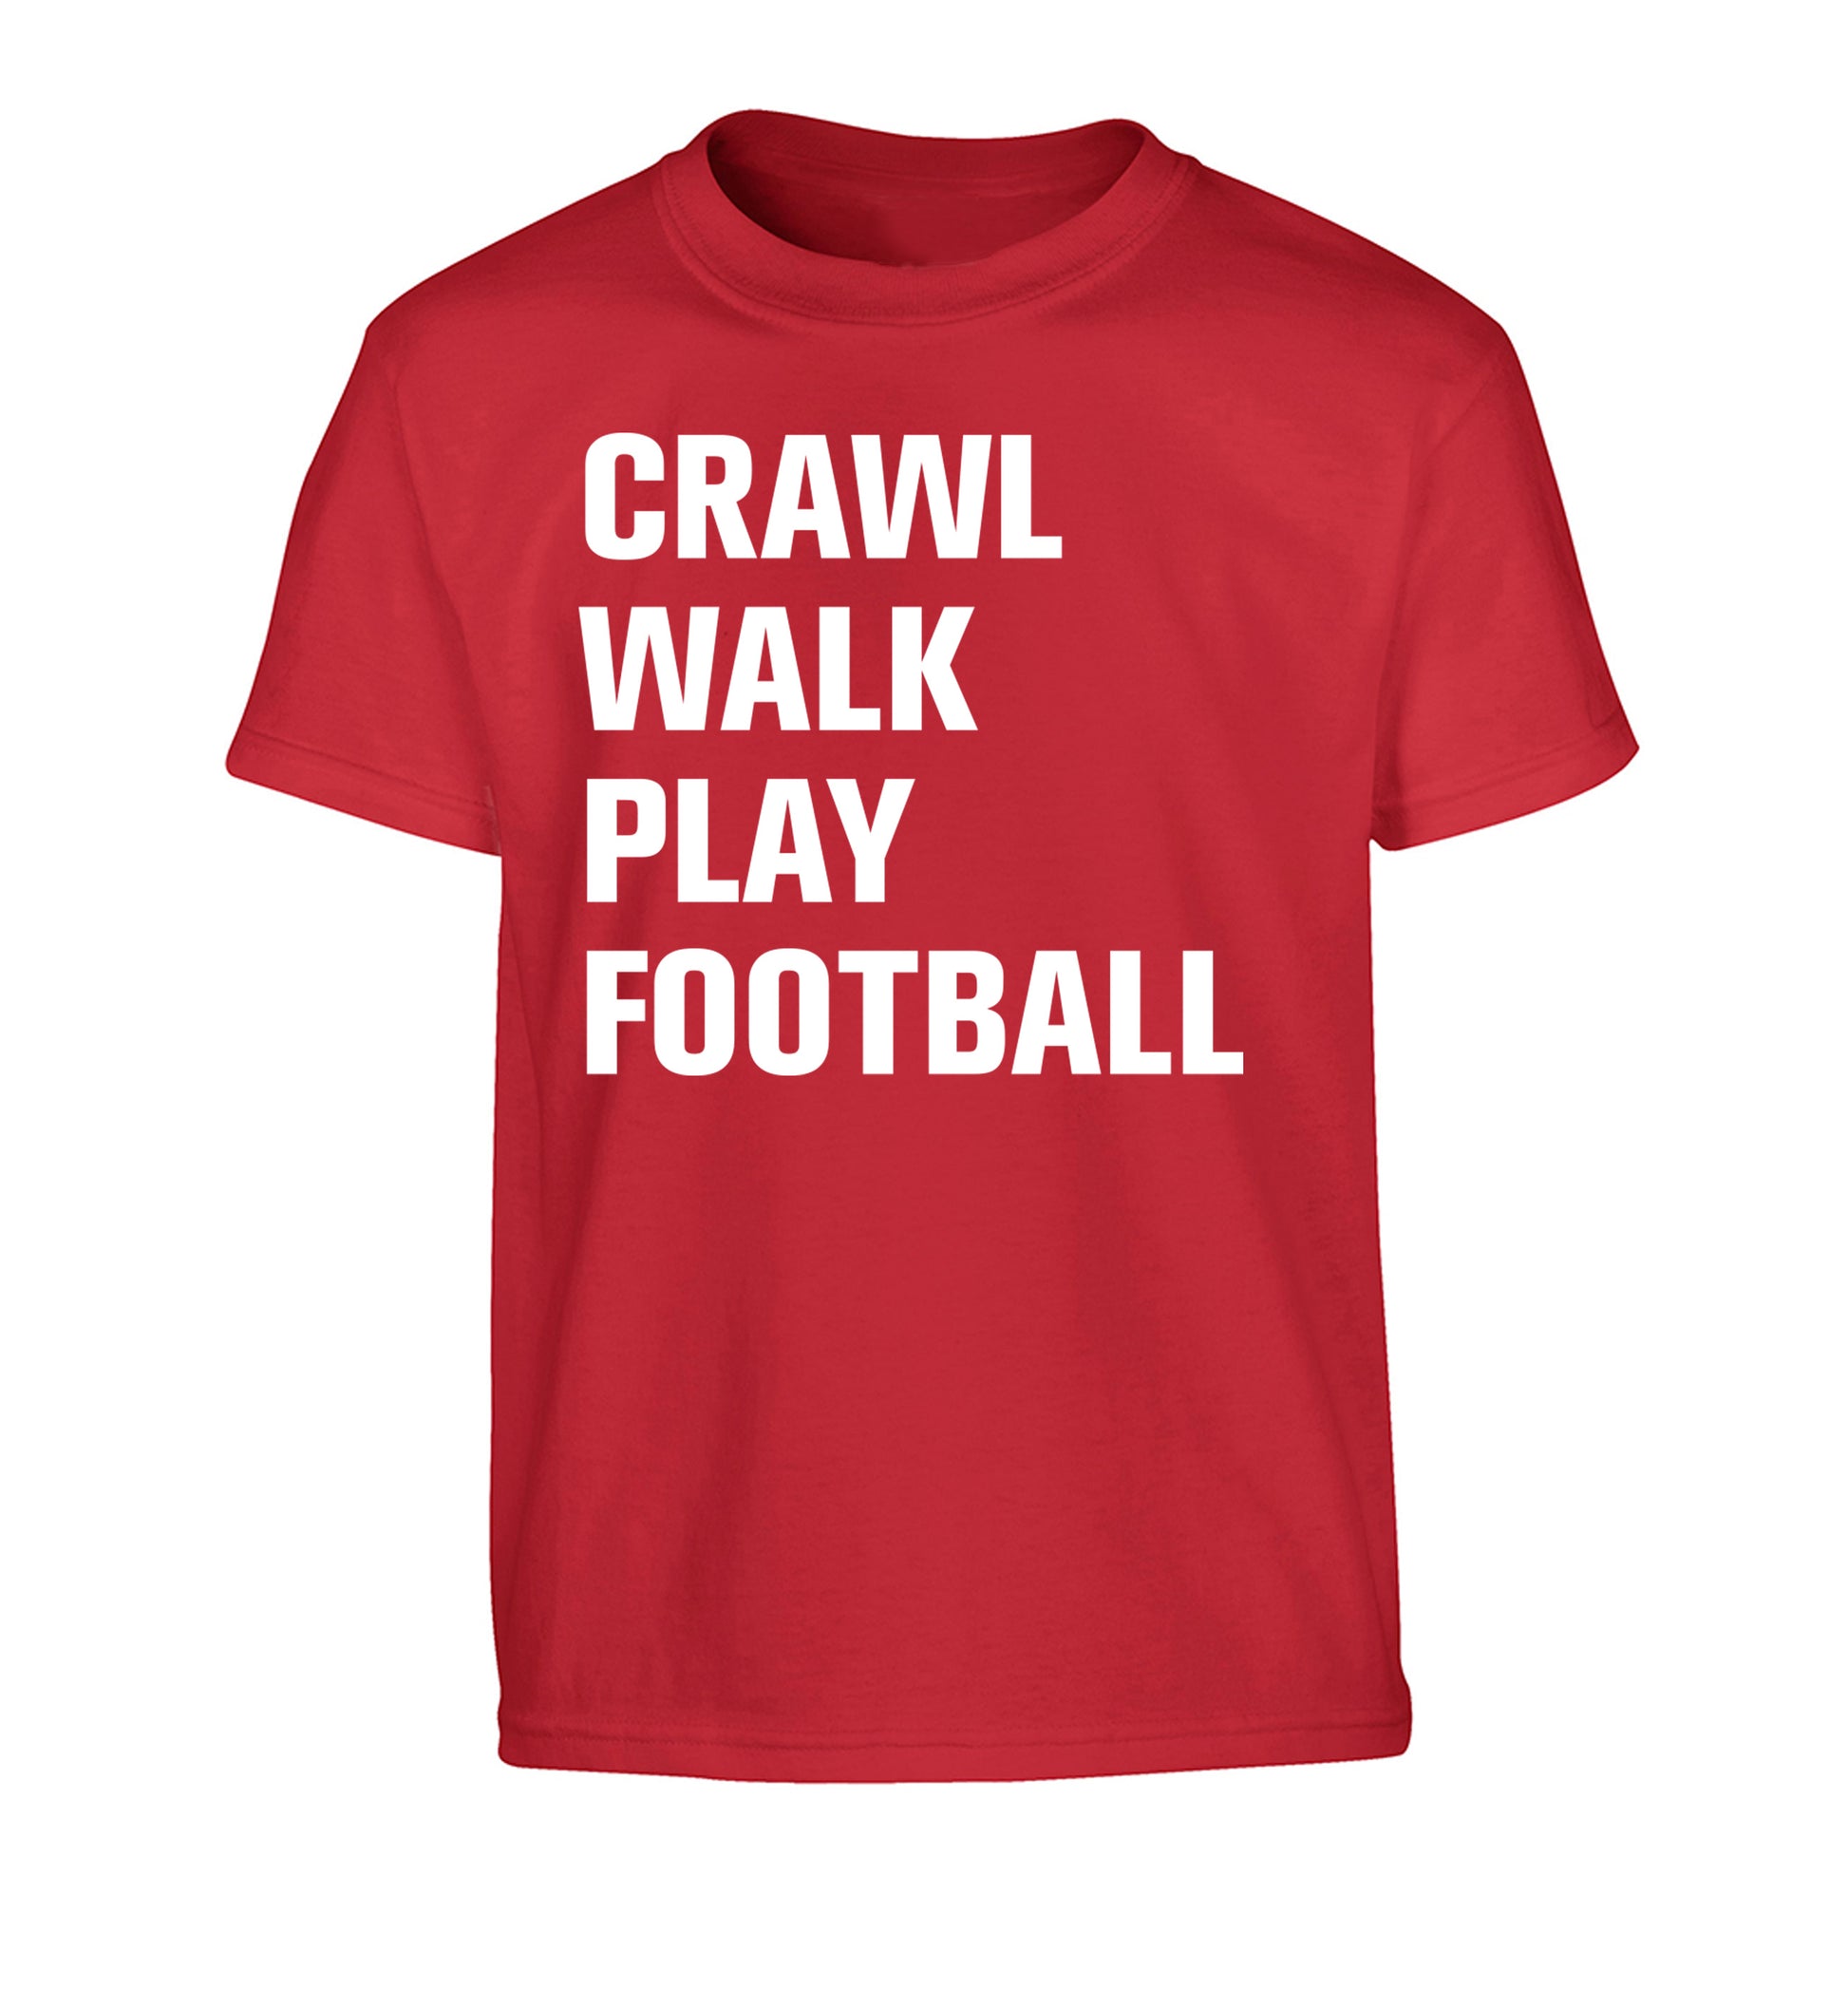 Crawl, walk, play football Children's red Tshirt 12-13 Years